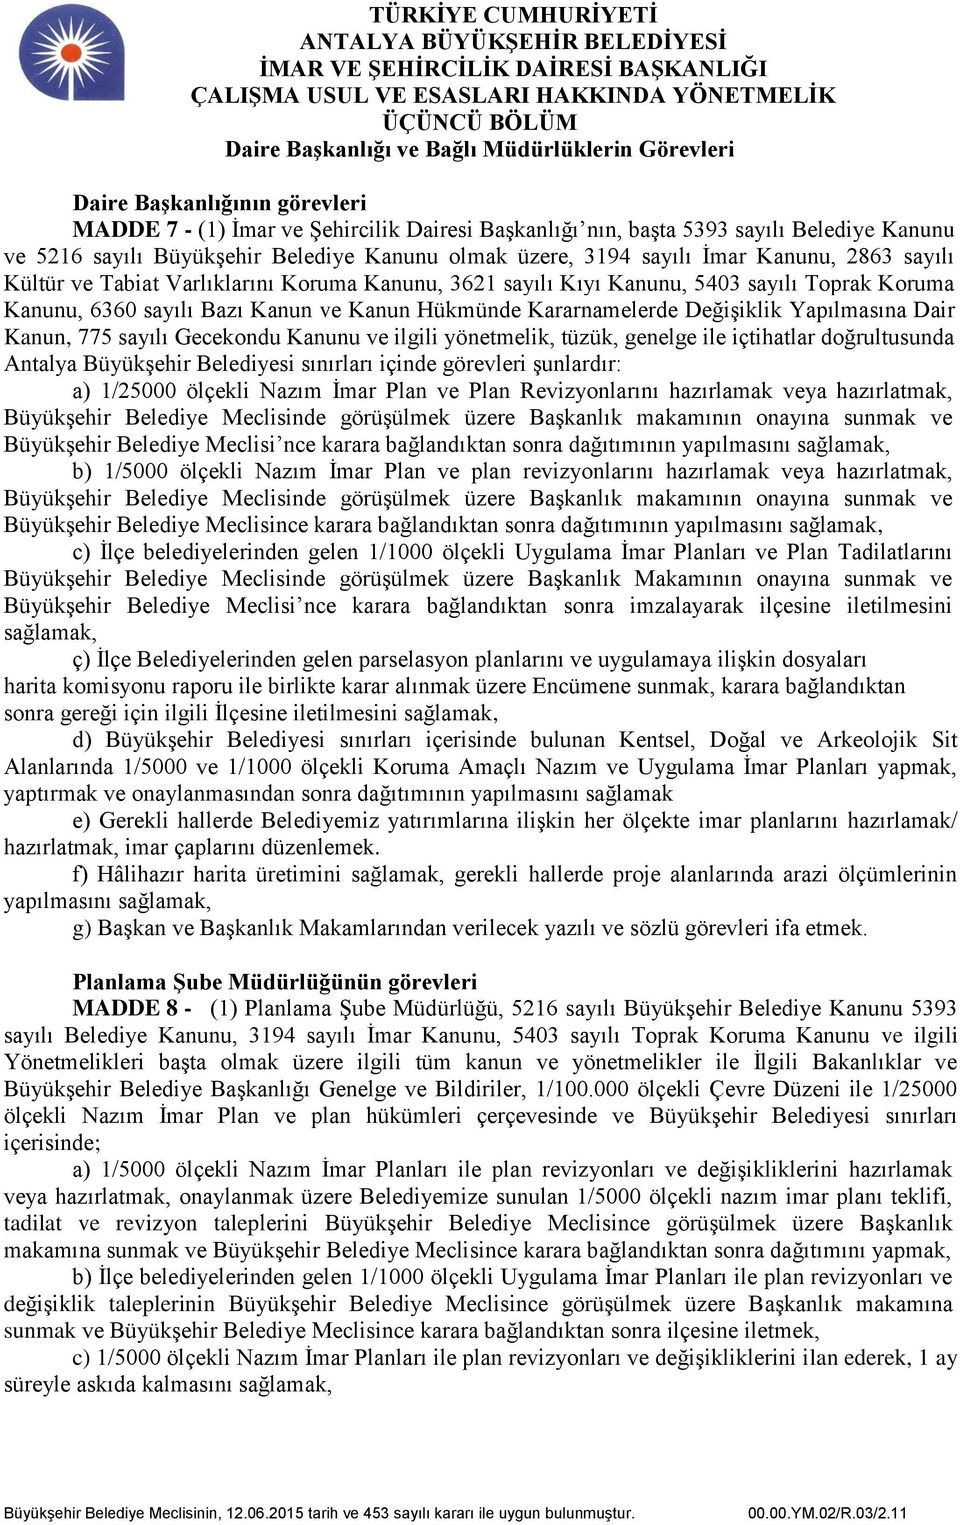 Kanun ve Kanun Hükmünde Kararnamelerde Değişiklik Yapılmasına Dair Kanun, 775 sayılı Gecekondu Kanunu ve ilgili yönetmelik, tüzük, genelge ile içtihatlar doğrultusunda Antalya Büyükşehir Belediyesi